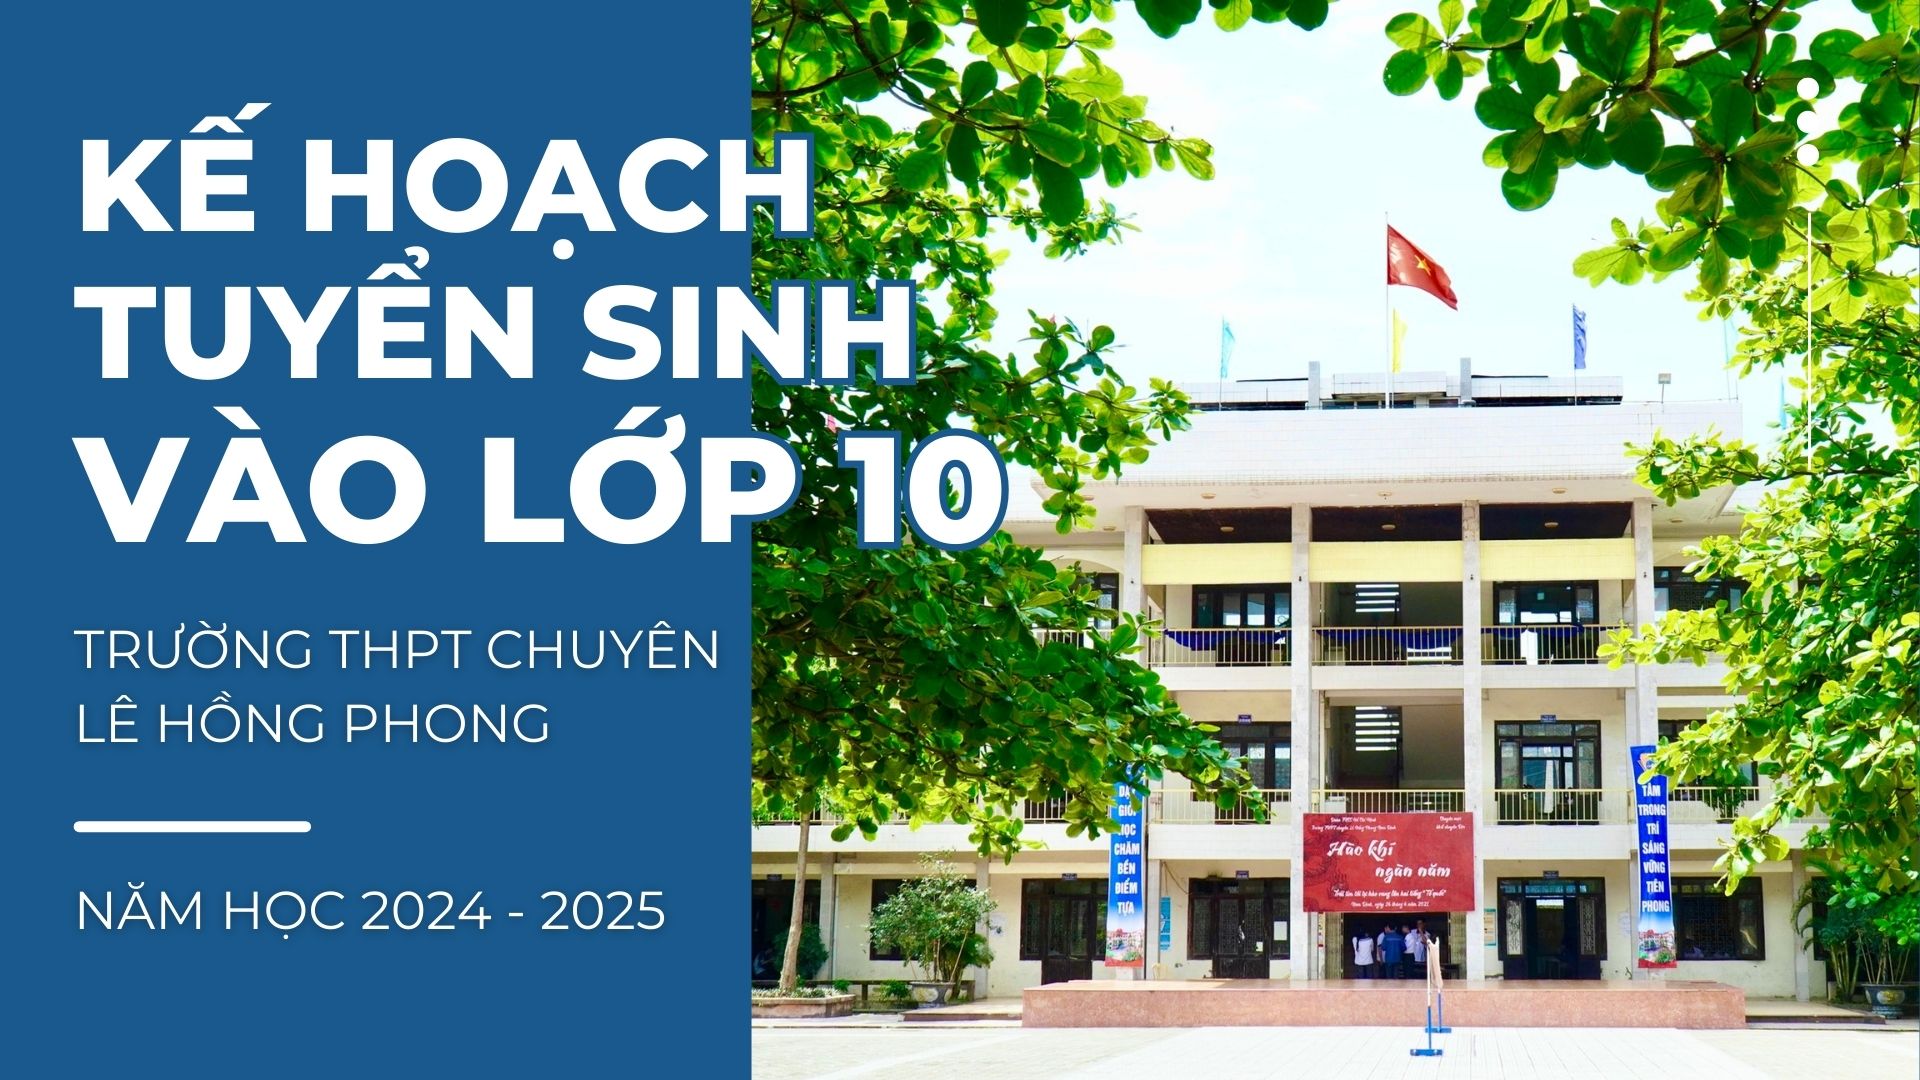 Kế hoạch tuyển sinh vào lớp 10 trường THPT chuyên Lê Hồng Phong năm học 2024 - 2025,